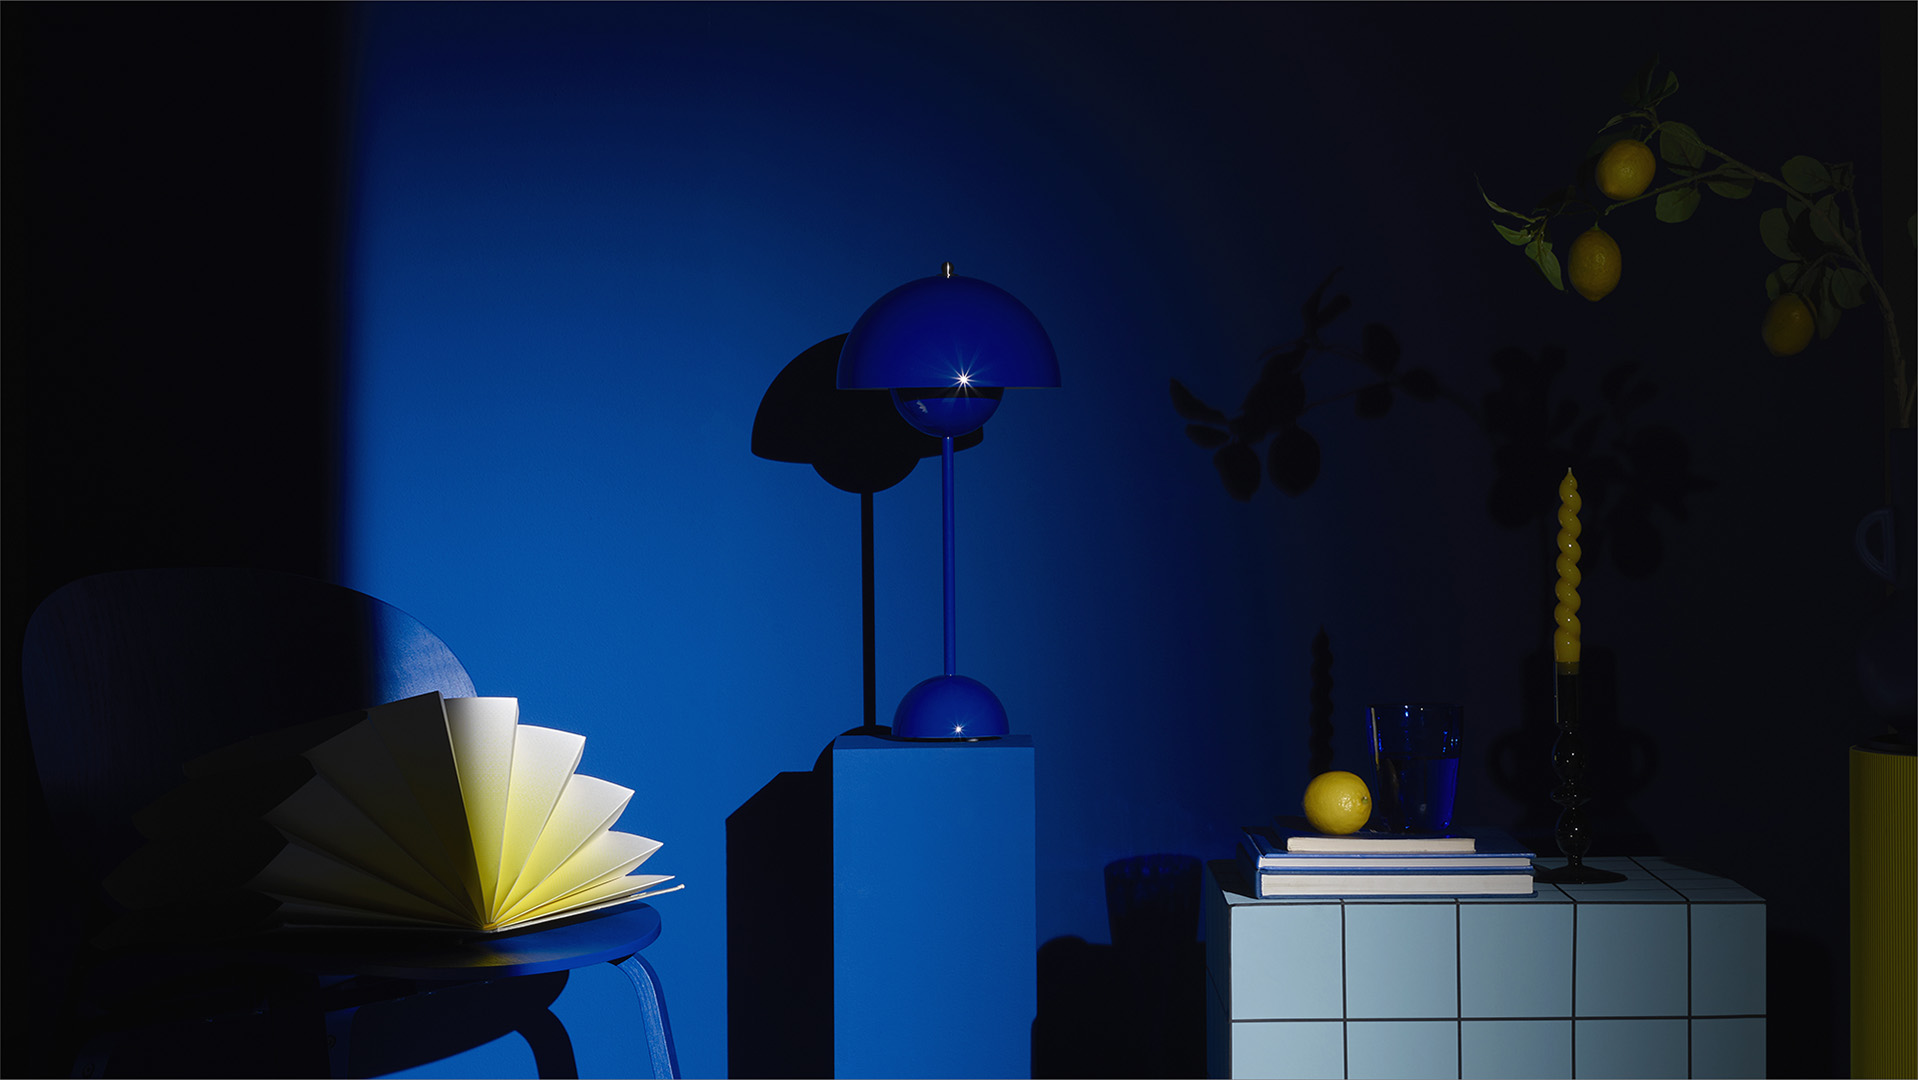 une nature morte comprenant une chaise, une table bleue, d'autres objets décoratifs très graphiques bleus cobalt et jaunes pastels/ La lumière de l'image joue le clair-obscur